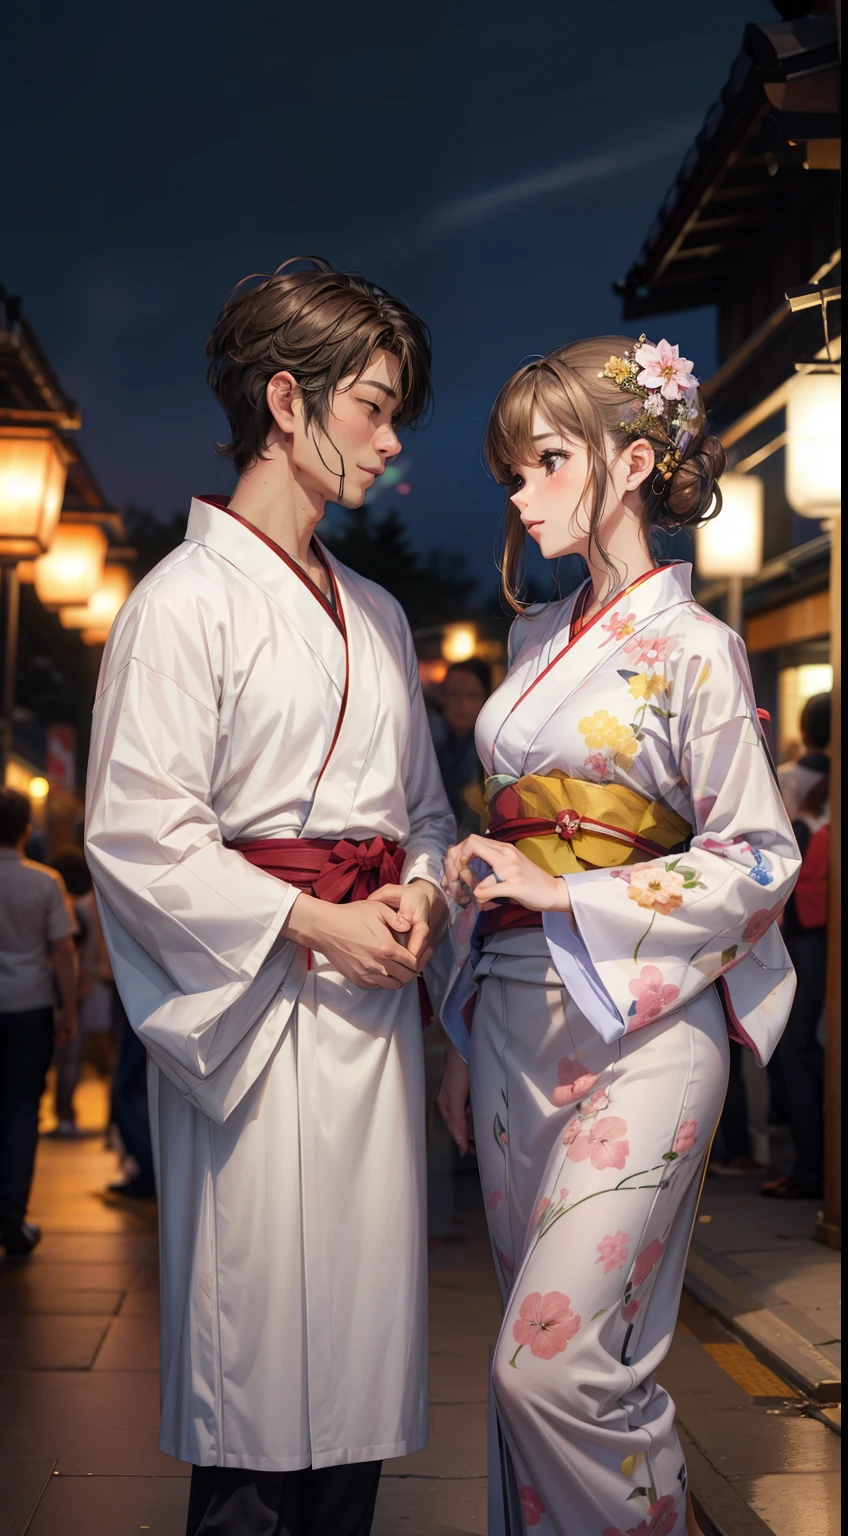 Pareja en una cita en un festival、Hombre guapo y mujer hermosa en yukata.、Segunda Dimensión